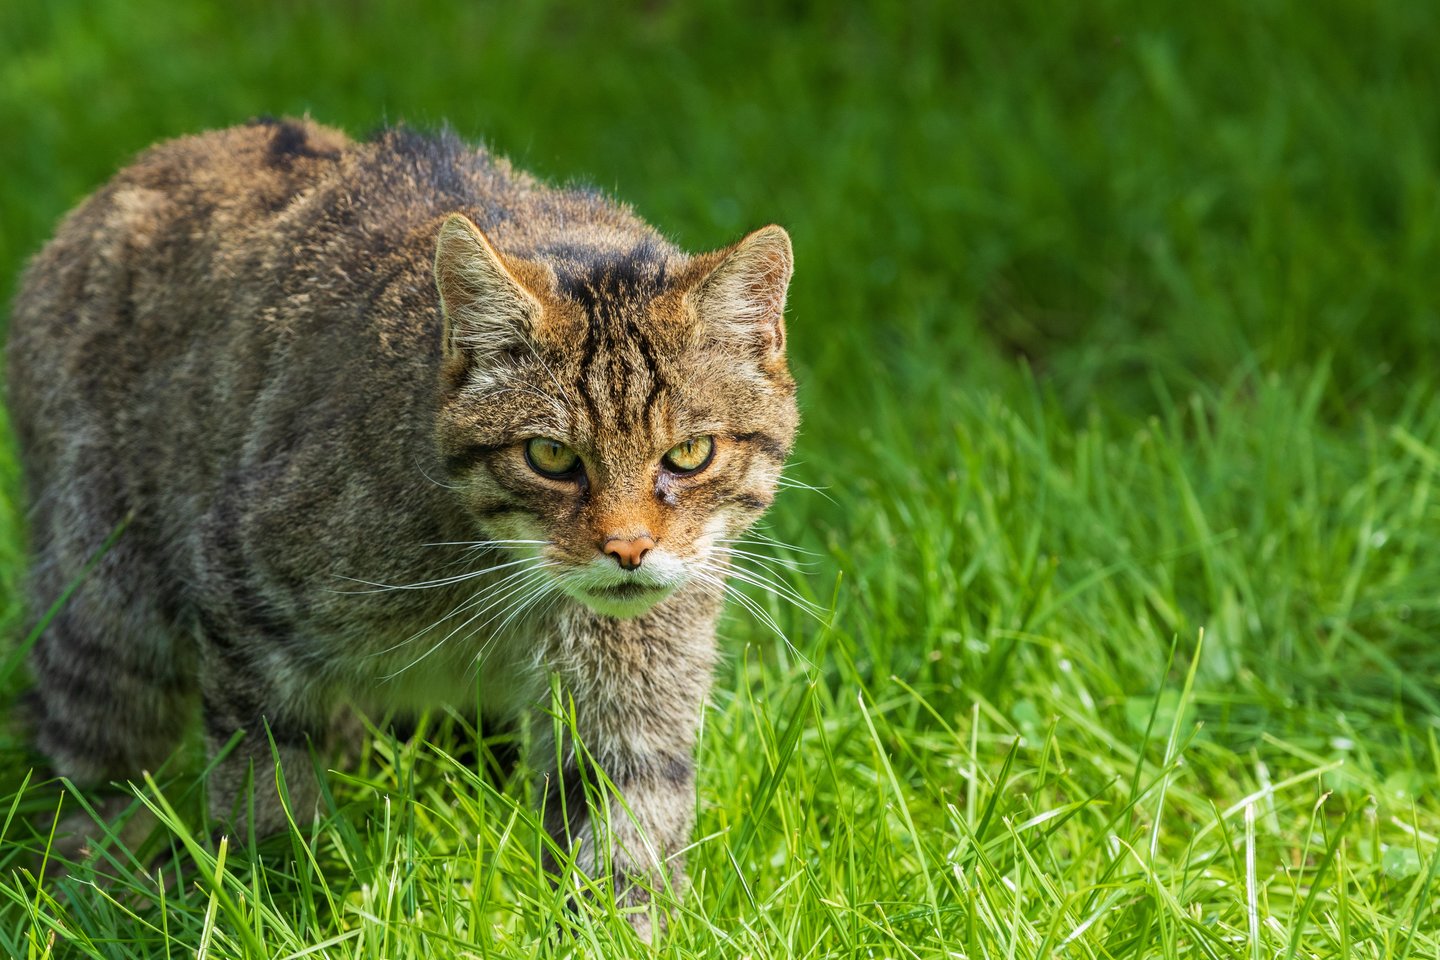 Katės agresiją nuo seno naudoja dėl daugelio priežasčių, tokių kaip grobio medžiojimas, savigyna, teritorijos gynimas ir konkurentų atsikratymas.<br>123rf nuotr.